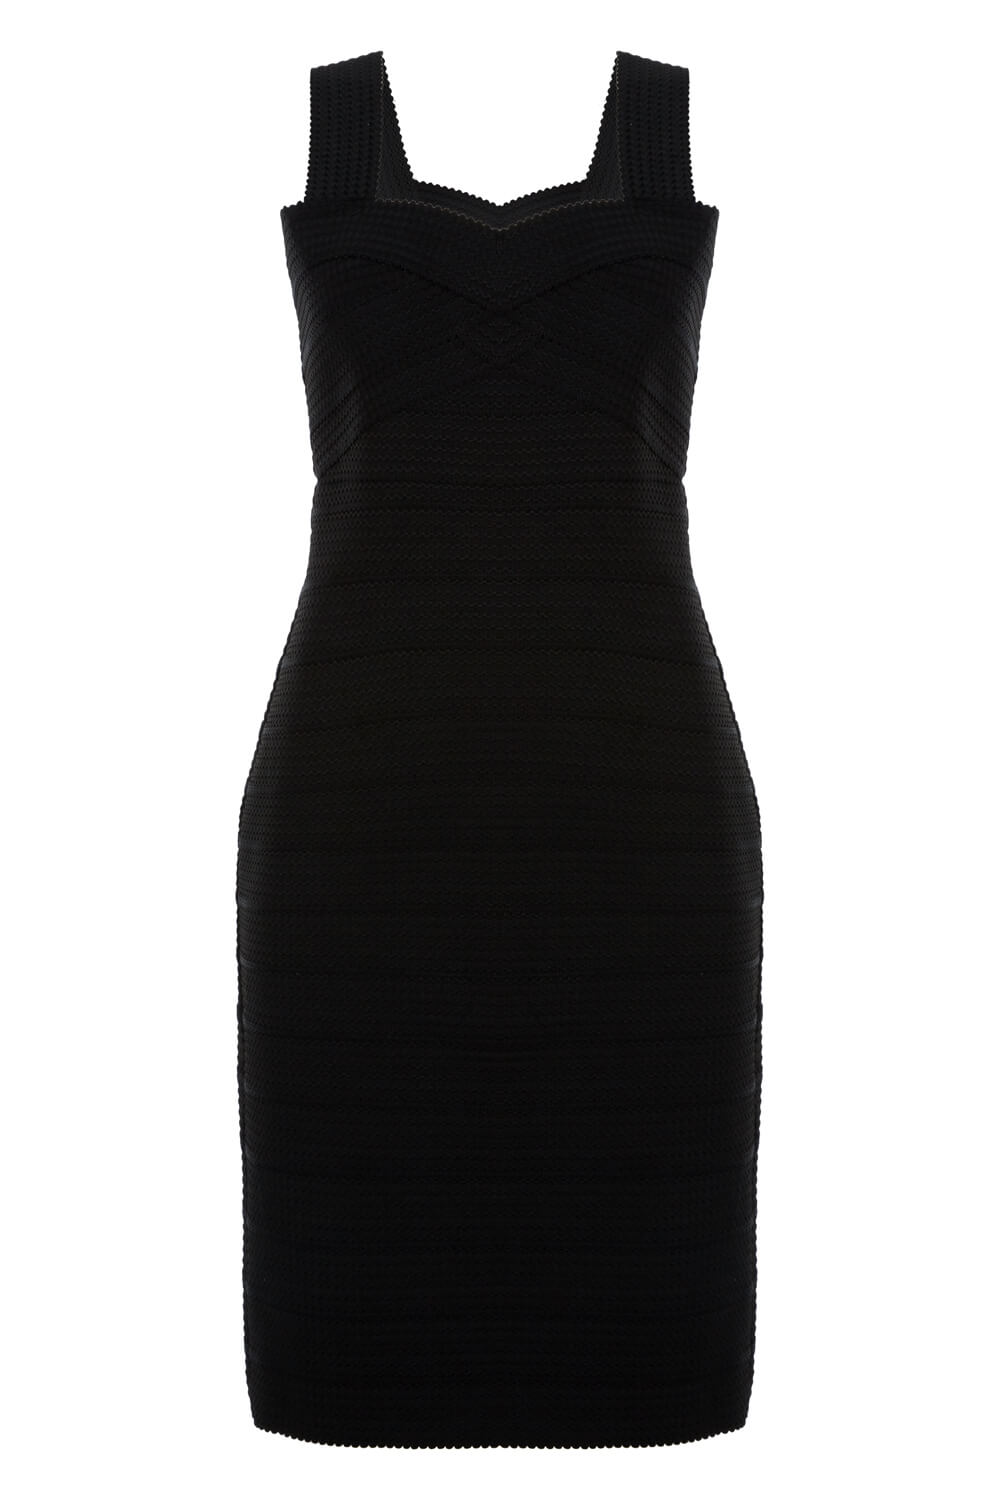 Black Bandage Dress, Image 4 of 4